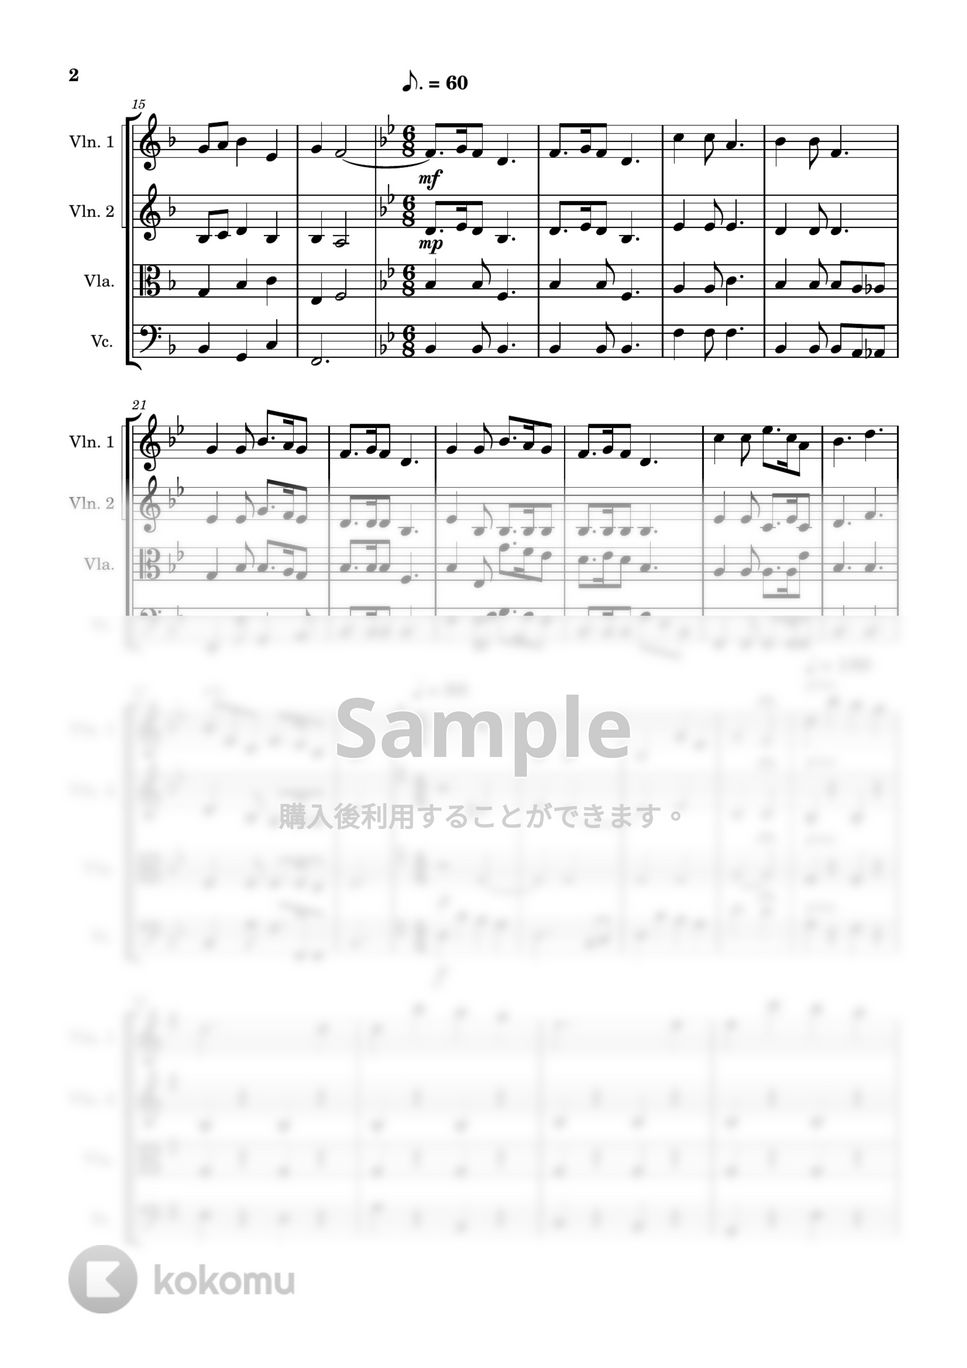 ジェームズ・ピアポント - クリスマスメドレー (弦楽四重奏) by Cellotto